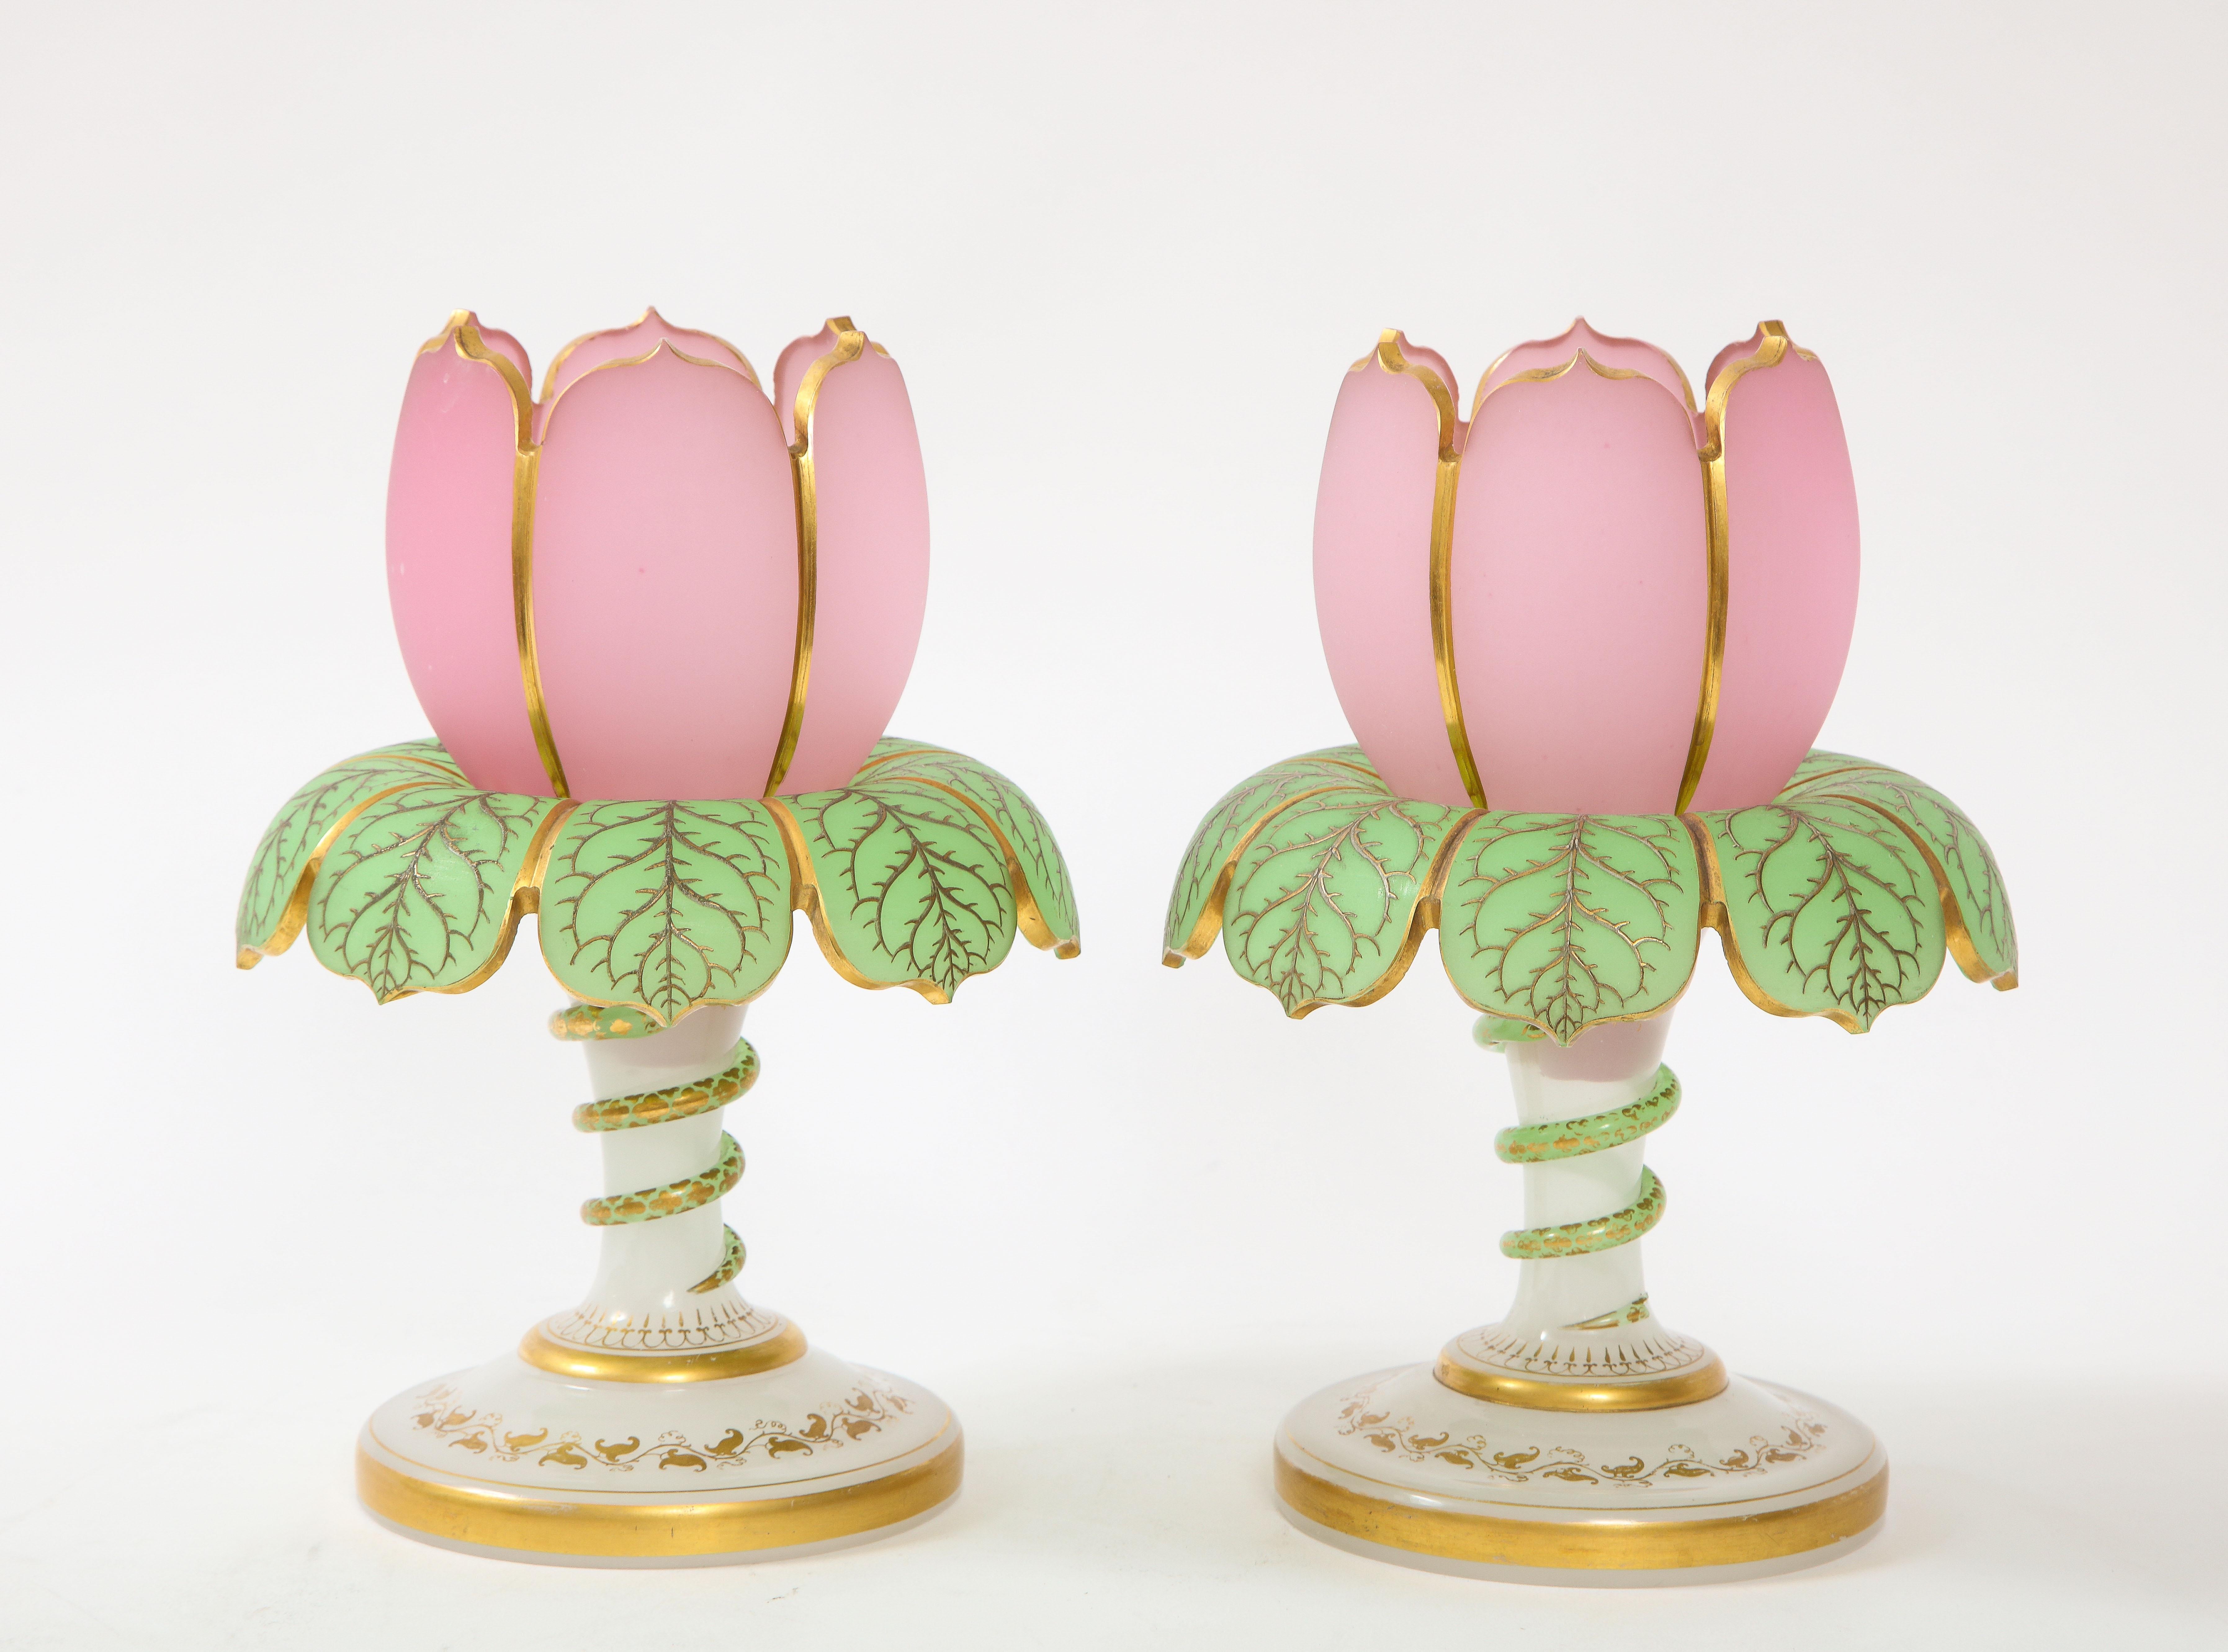 Eine fabelhafte und ziemlich seltene fantastischen Zustand Paar 19. Jahrhundert Baccarat Tulip Form 3 Farbe Opalin Vasen / Kerzenhalter mit Schlange Dekor. Die Oberteile der Vasen bestehen aus rosafarbenem opalem Baccarat-Kristall und sind mit 24